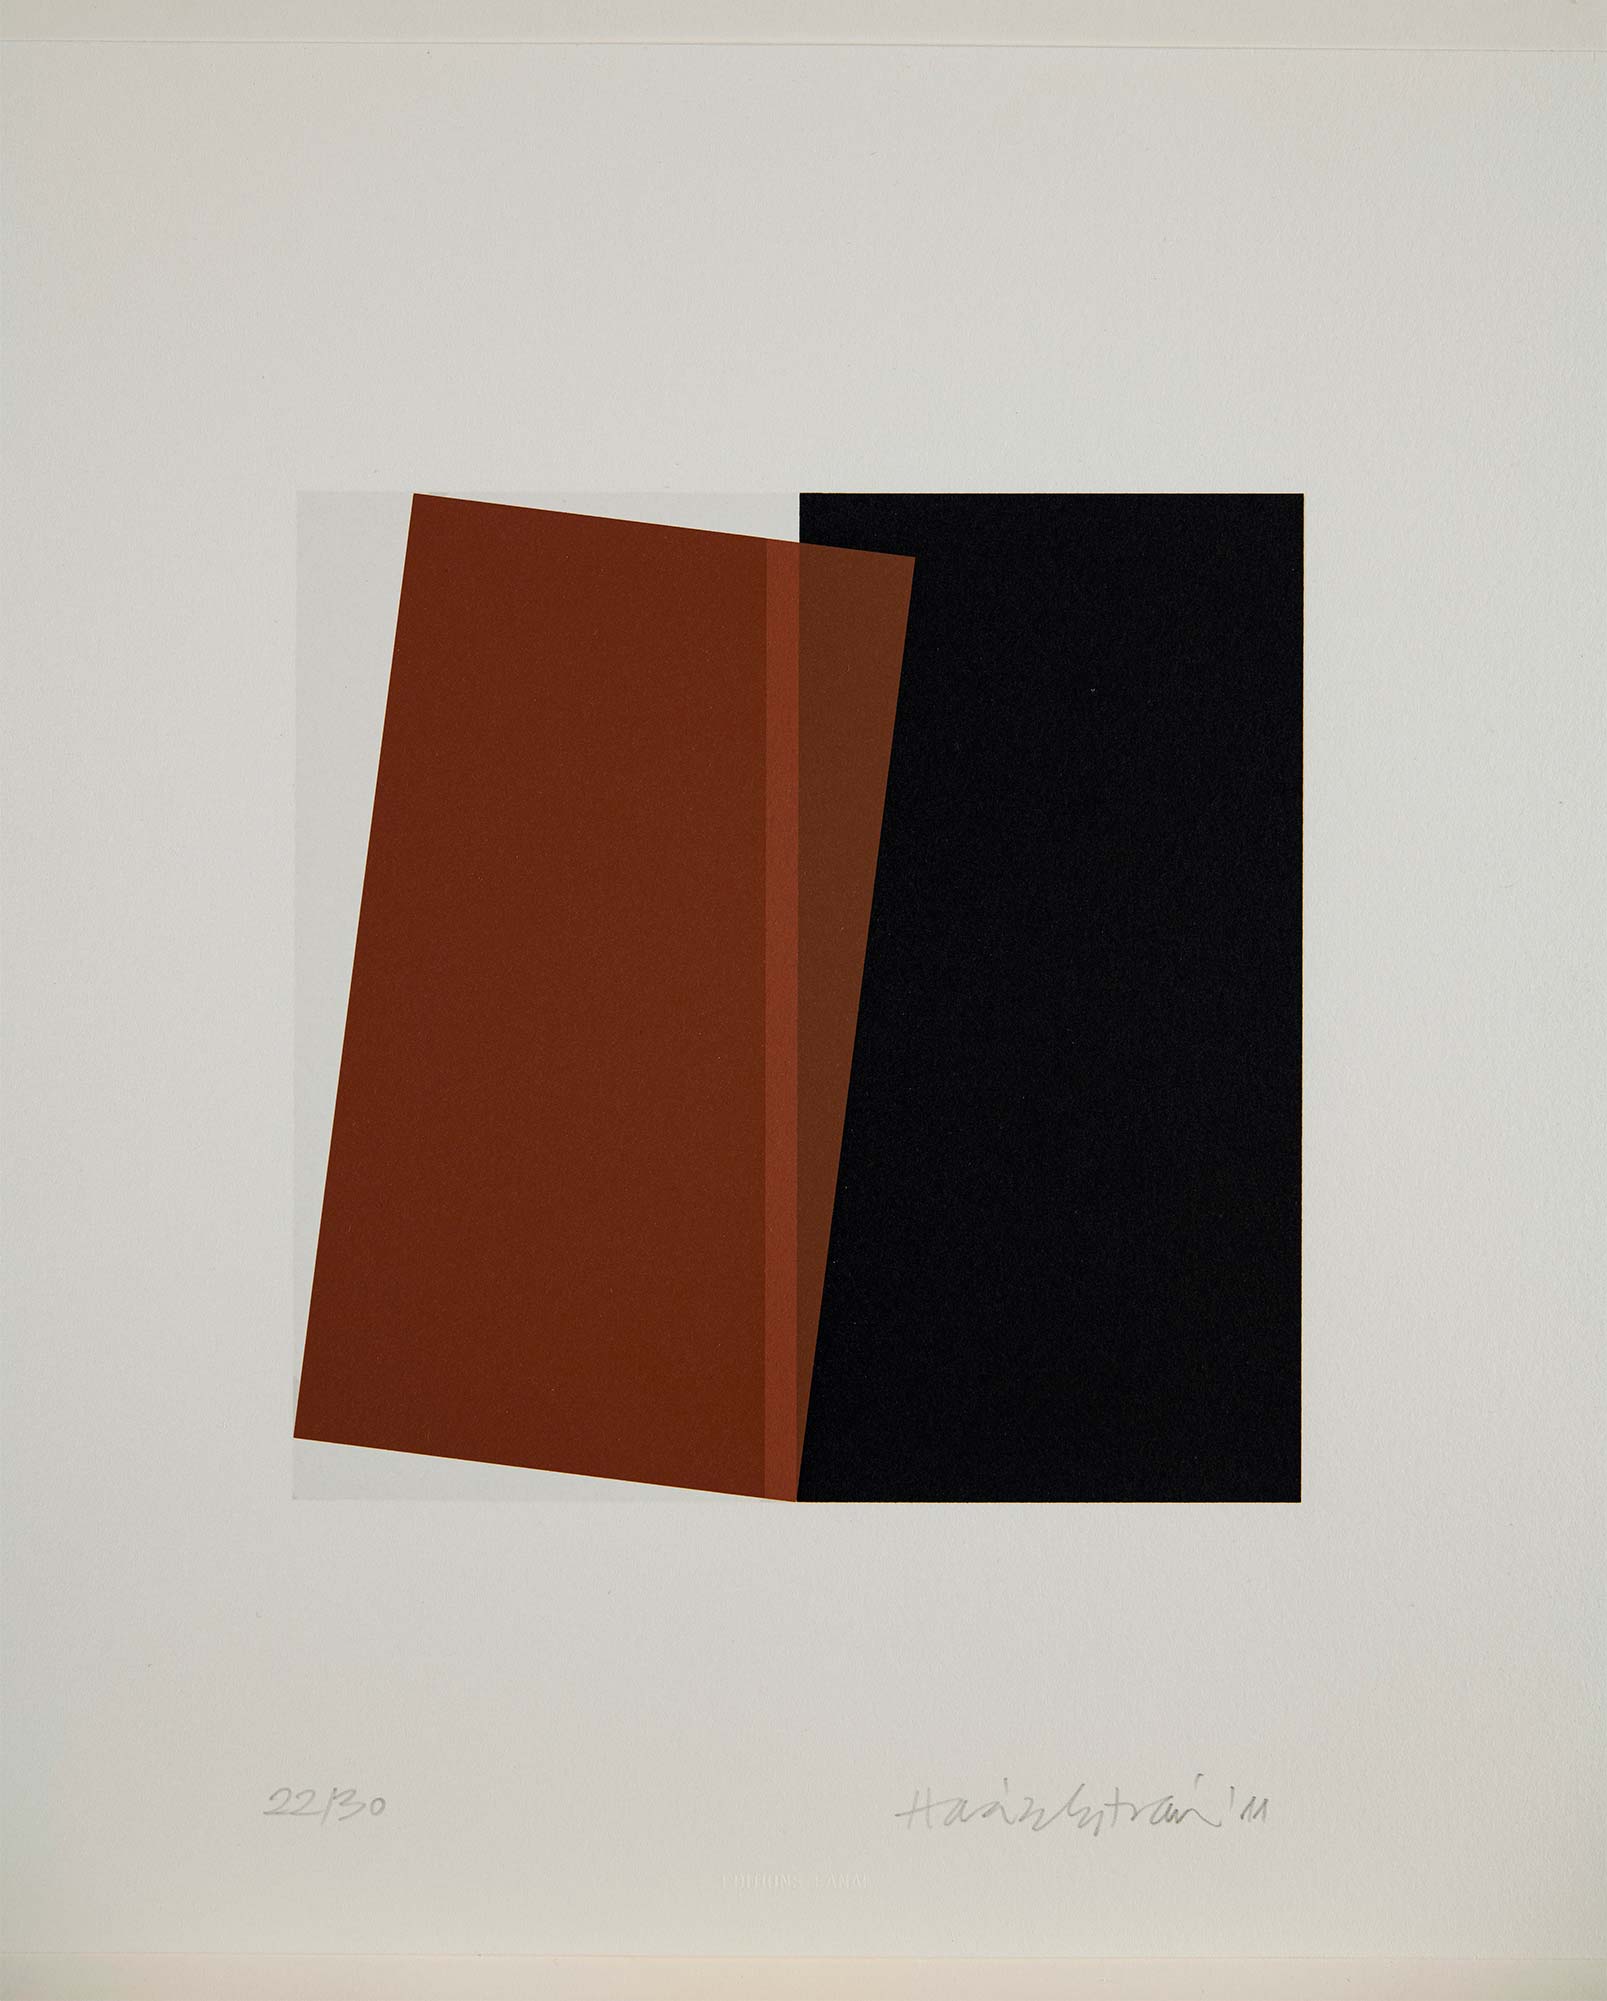 Haász István (1946-) Black and Brown Cube, 2011